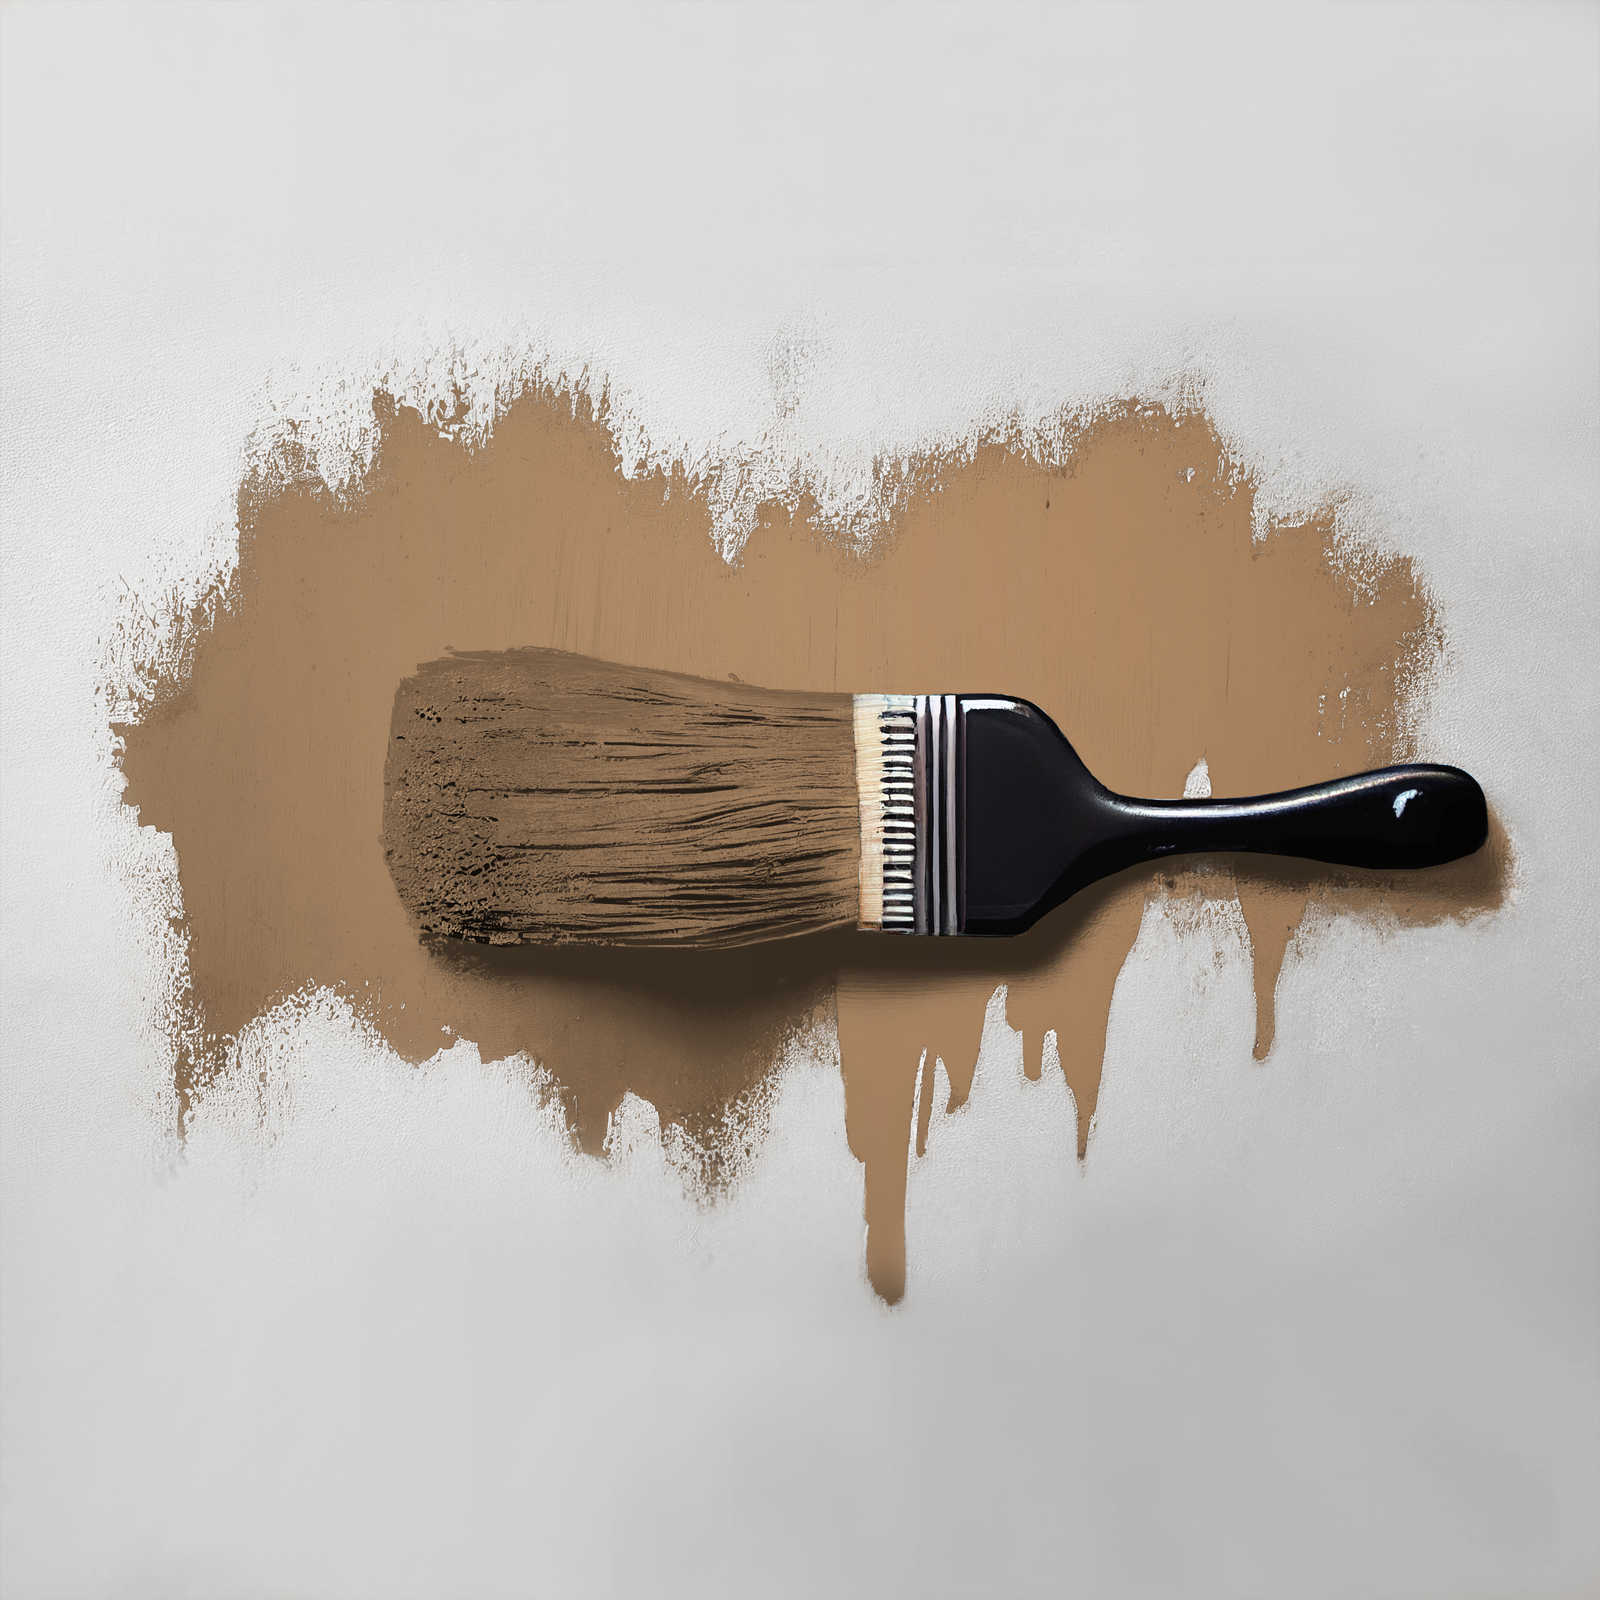             Peinture murale TCK6006 »Certain Cinnamon« en brun doré intense – 5,0 litres
        